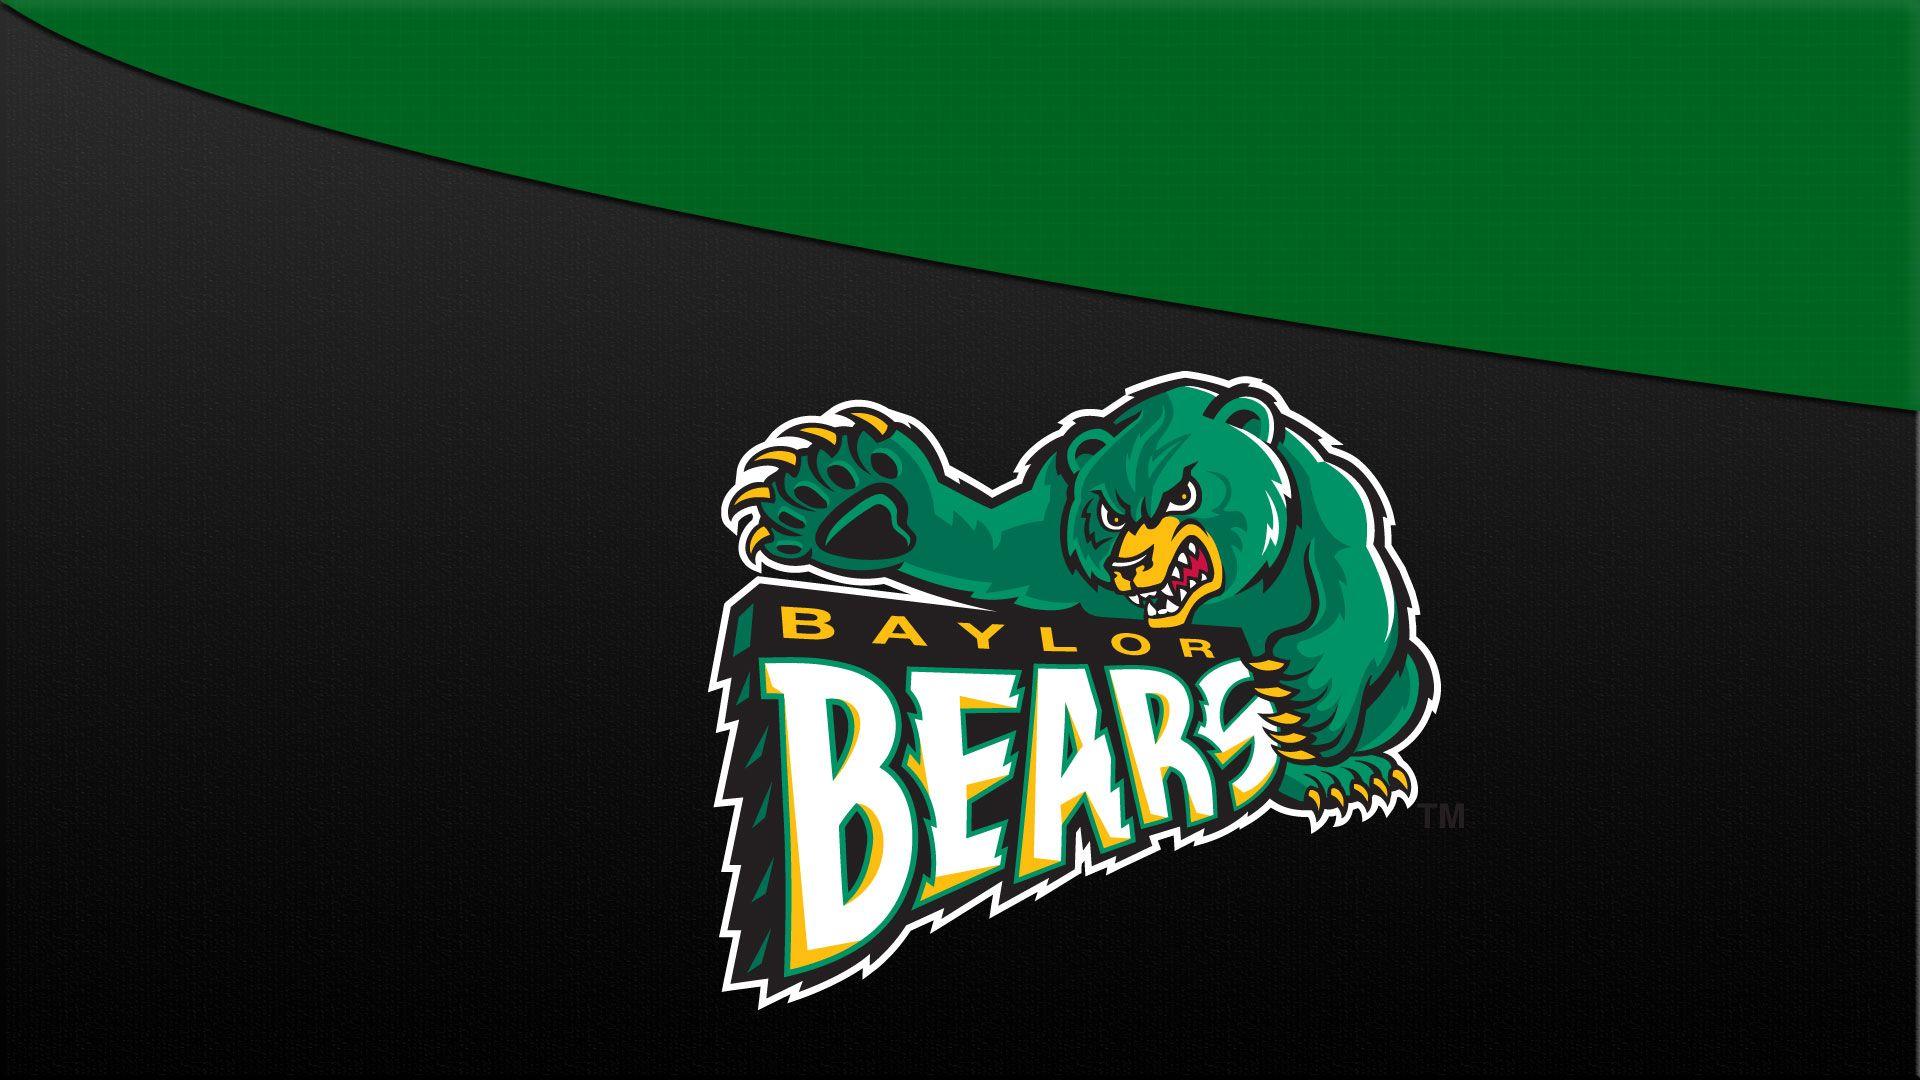 Baylor Bears Logo 1920×1080 Wallpaper. Basketball Wallpaper at